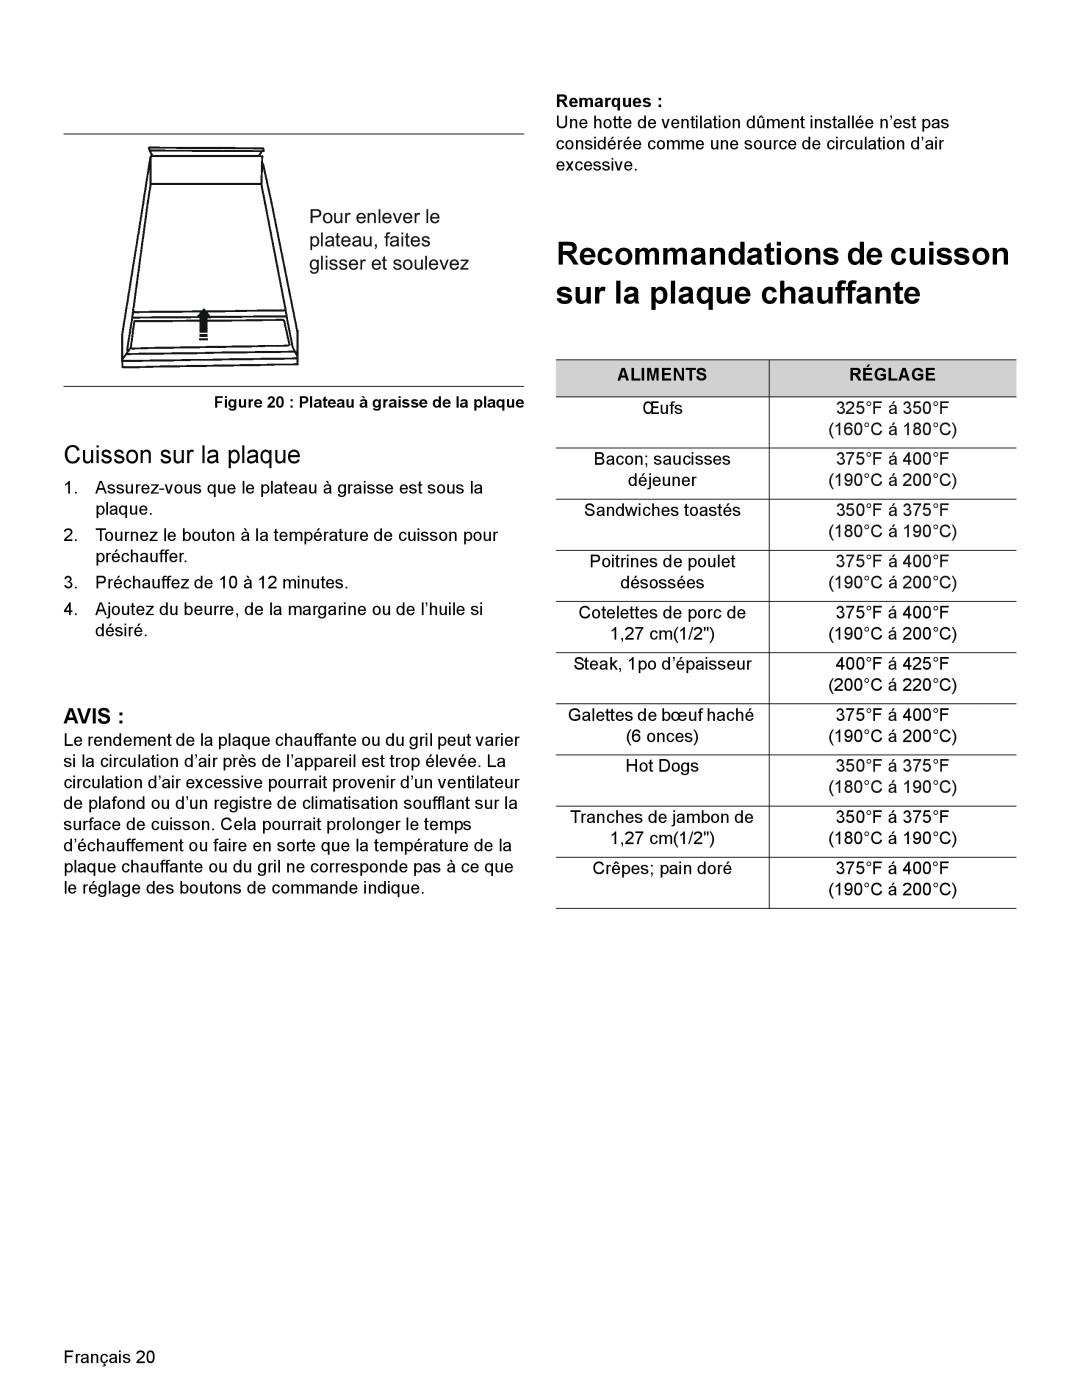 Thermador PRG30, PRL36, PRL30 manual Recommandations de cuisson sur la plaque chauffante, Cuisson sur la plaque 